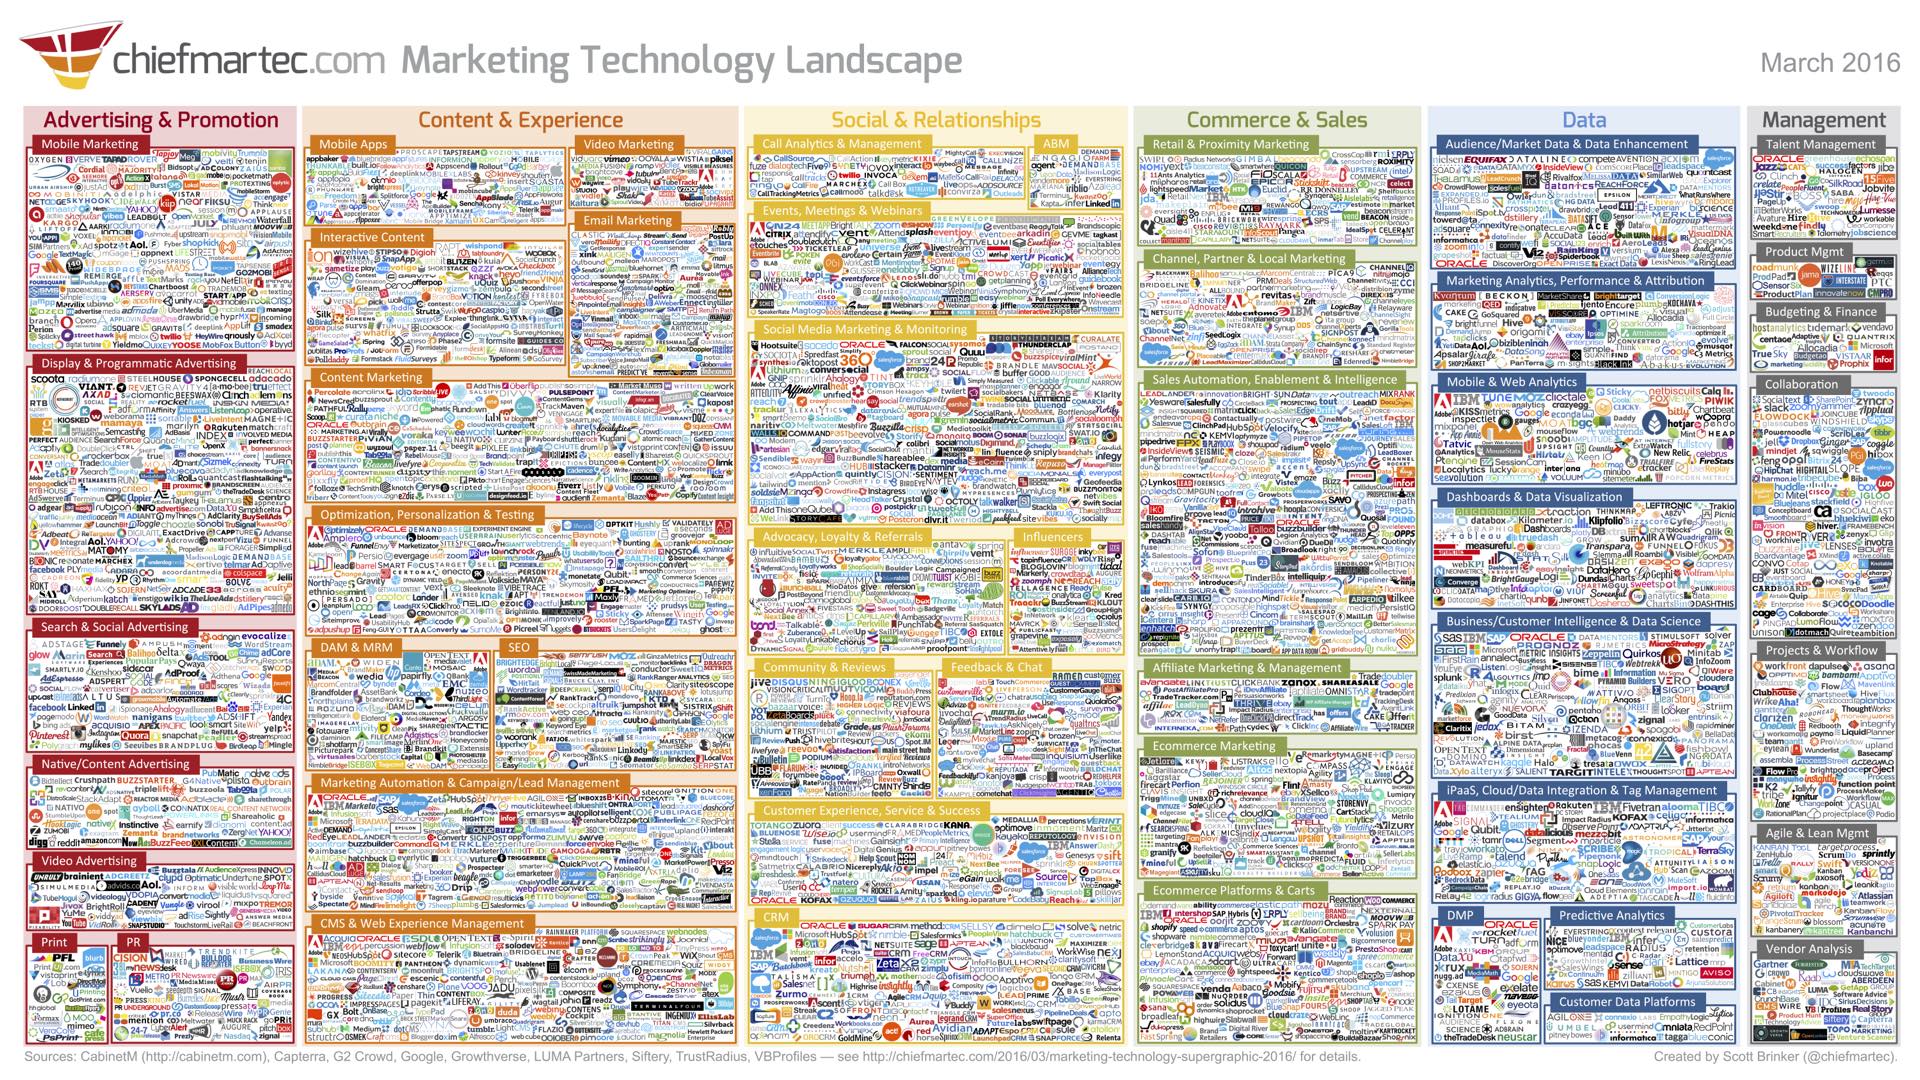 Marketing Technology Landscape 2016